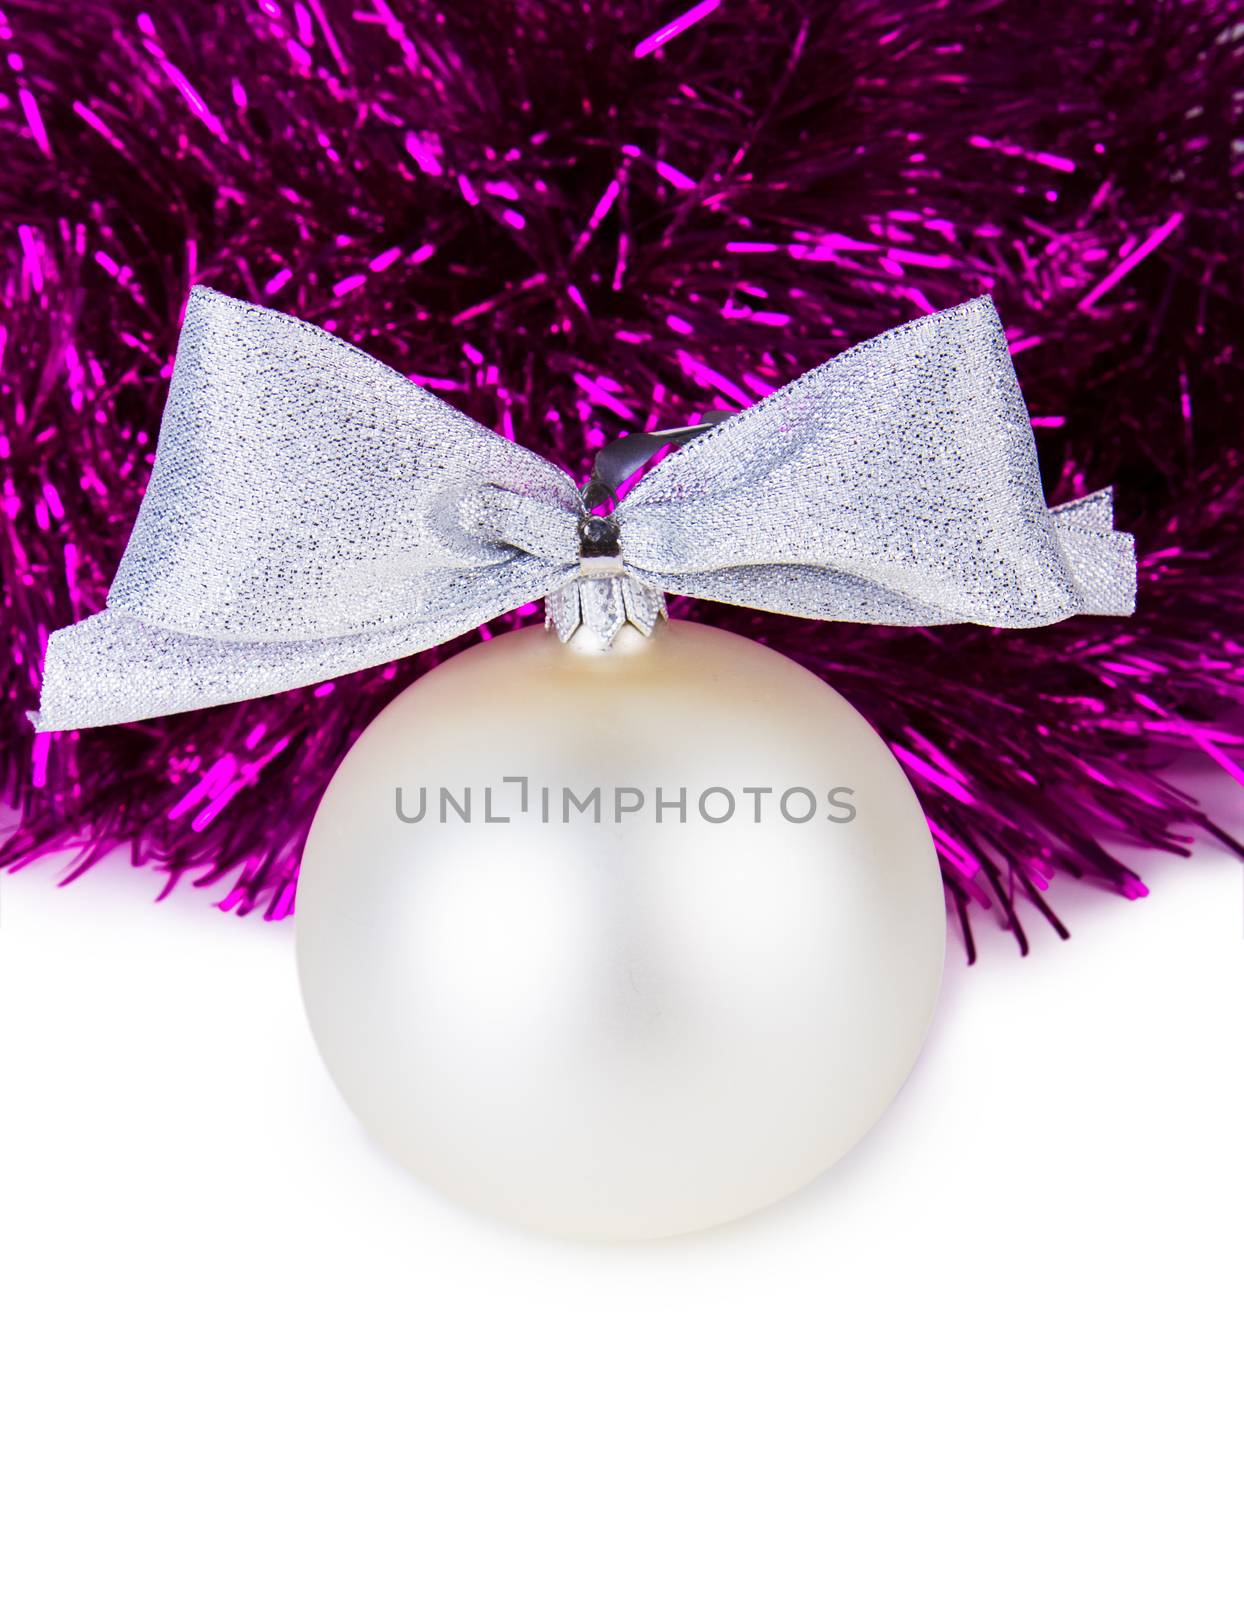 White Christmas balls by grigorenko